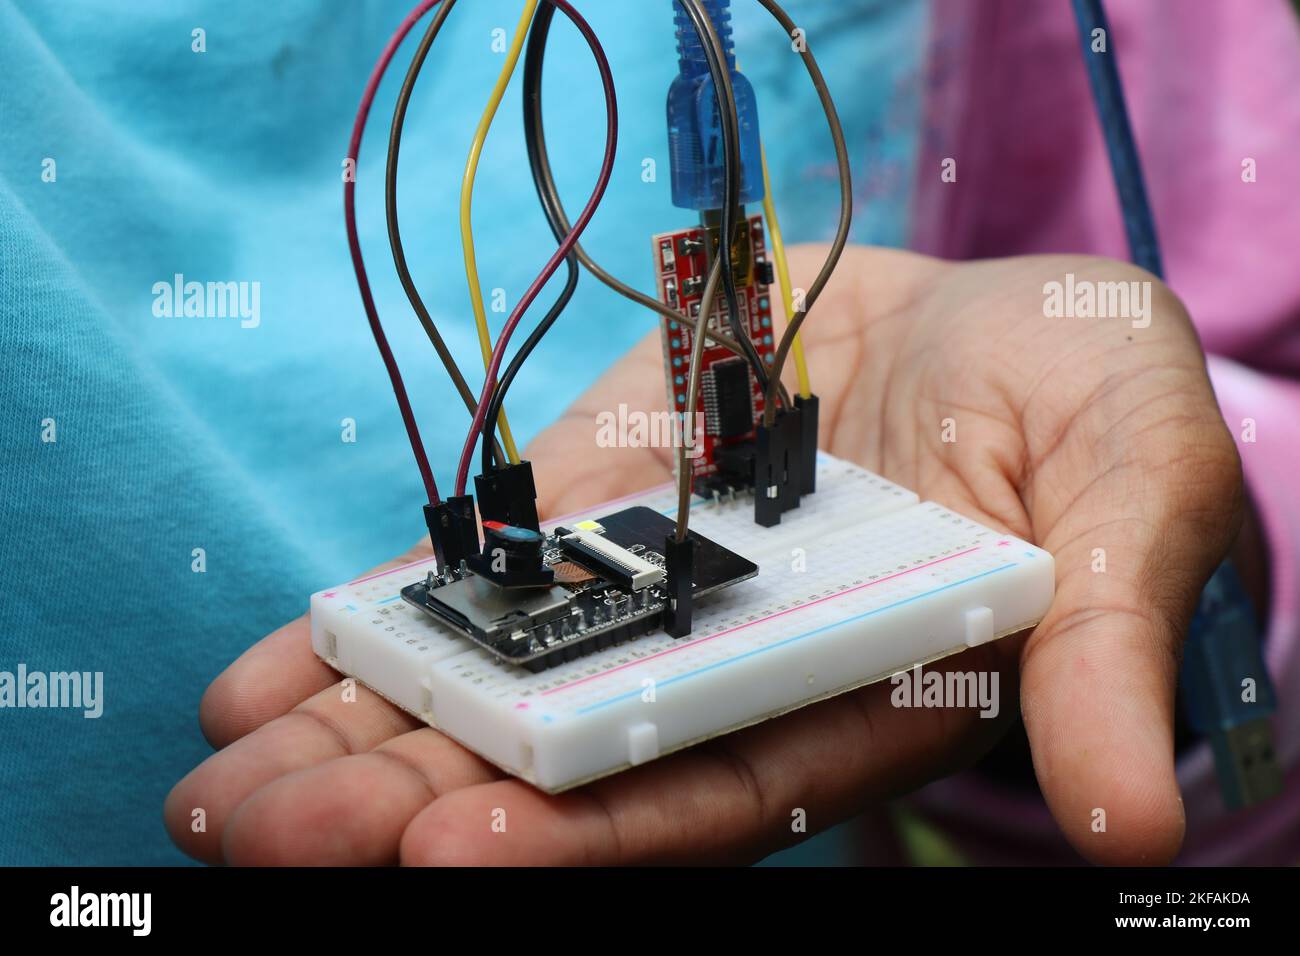 Breadboard-Projekt oder Mikrocontroller-Projekt mit programmierbarer Steuerplatine mit anderen elektronischen Komponenten, die den Prototyp des Projekts zeigen Stockfoto